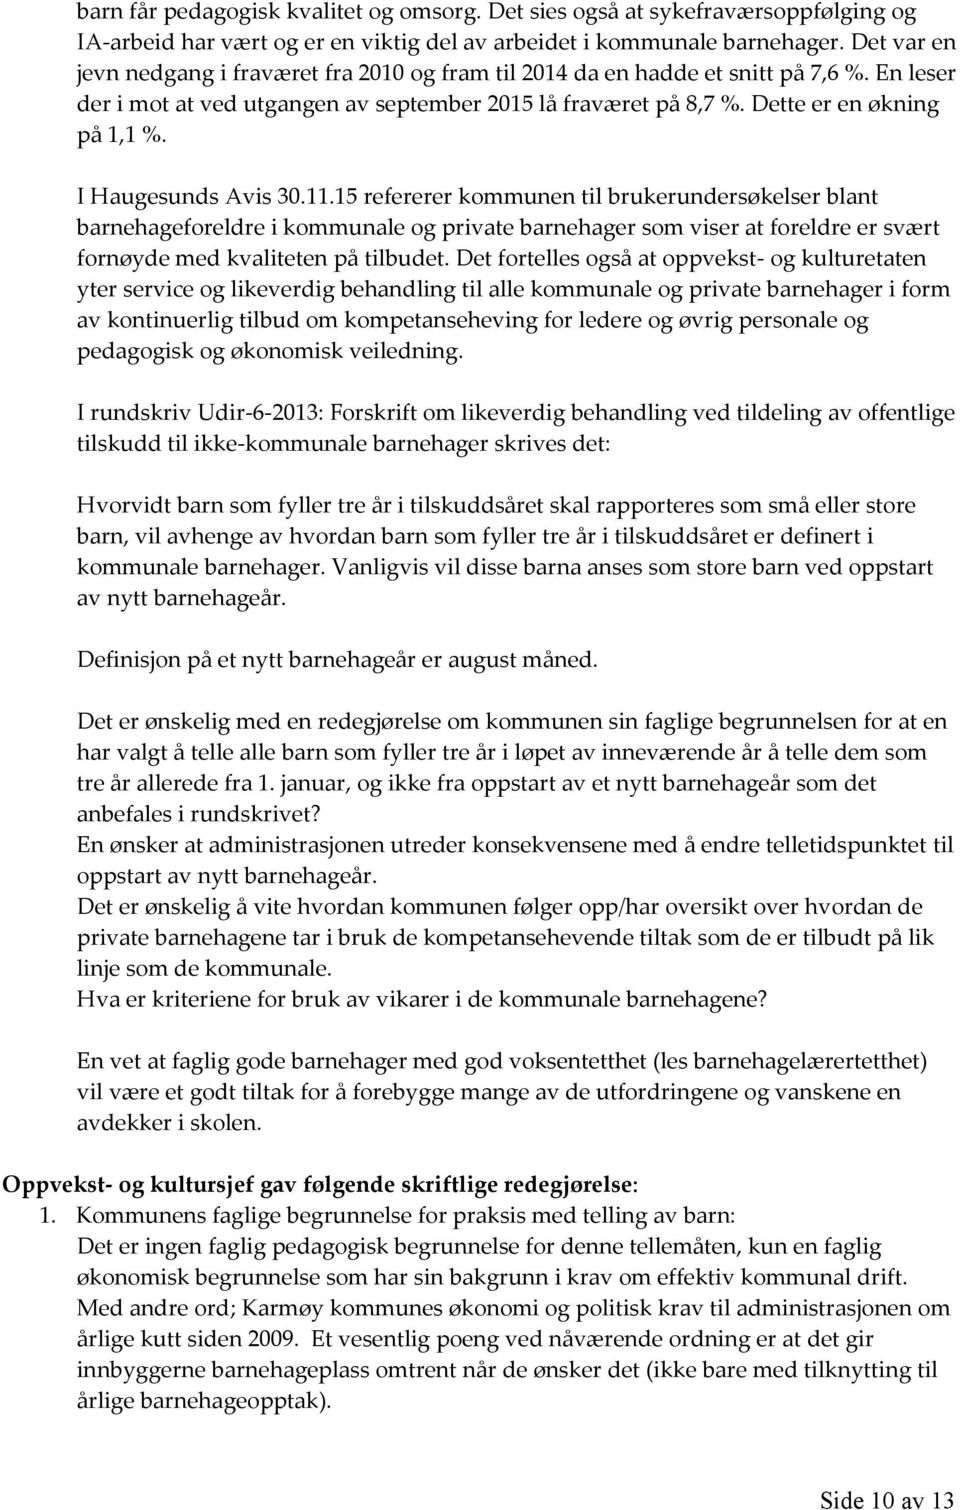 I Haugesunds Avis 30.11.15 refererer kommunen til brukerundersøkelser blant barnehageforeldre i kommunale og private barnehager som viser at foreldre er svært fornøyde med kvaliteten på tilbudet.